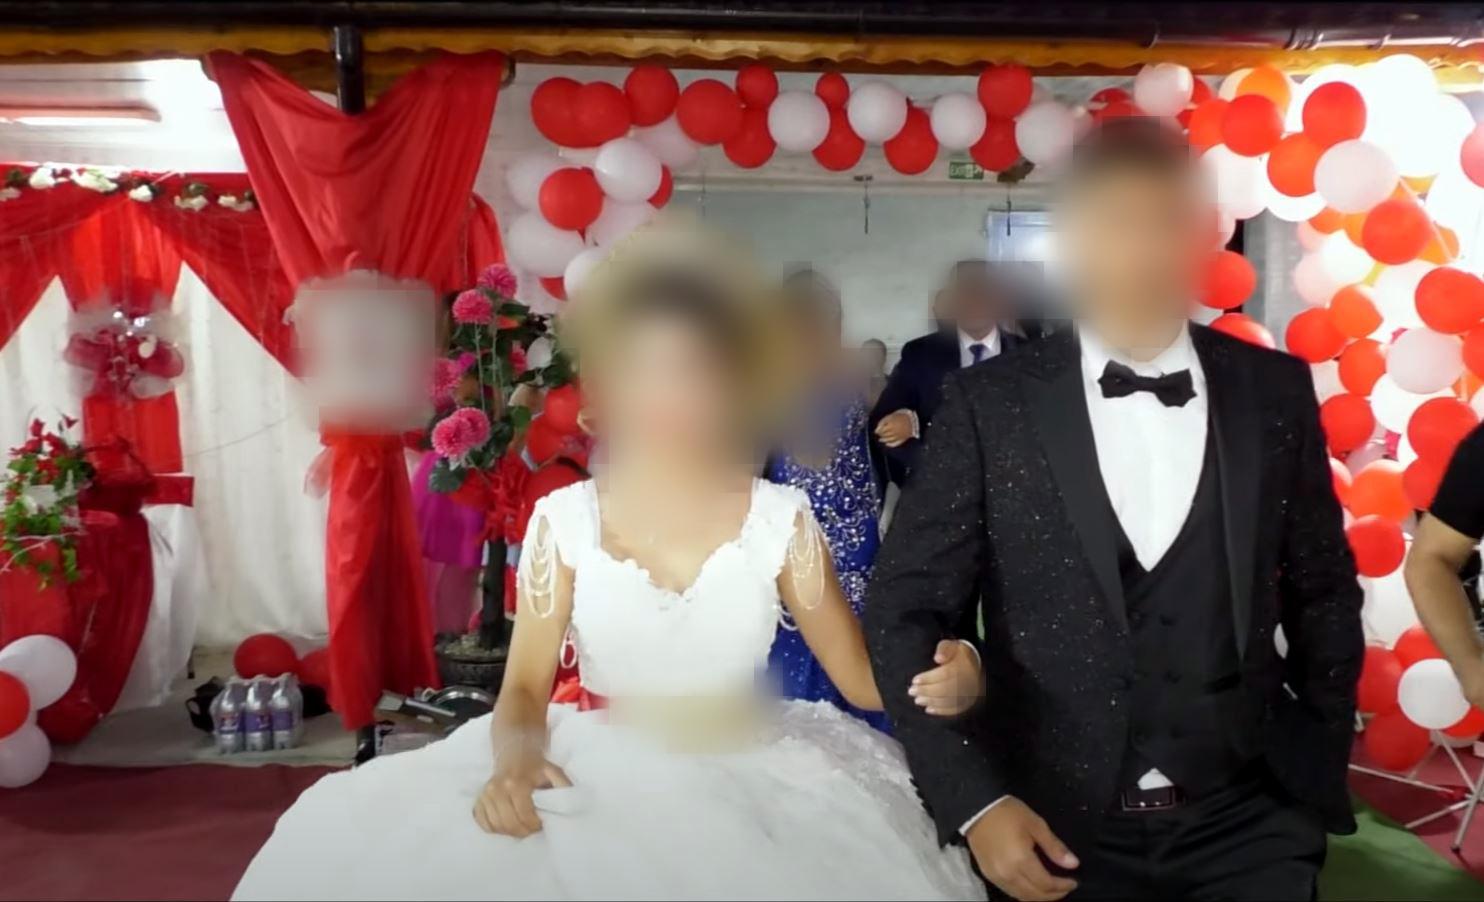 Videoer som familien har lagt ut på Youtube, viser en storslagen fest for det unge paret. Men guttens mor avviste i Oslo tingrett at hun organiserte et barneekteskap mellom en jente på 15 og sønnen på 17 år.